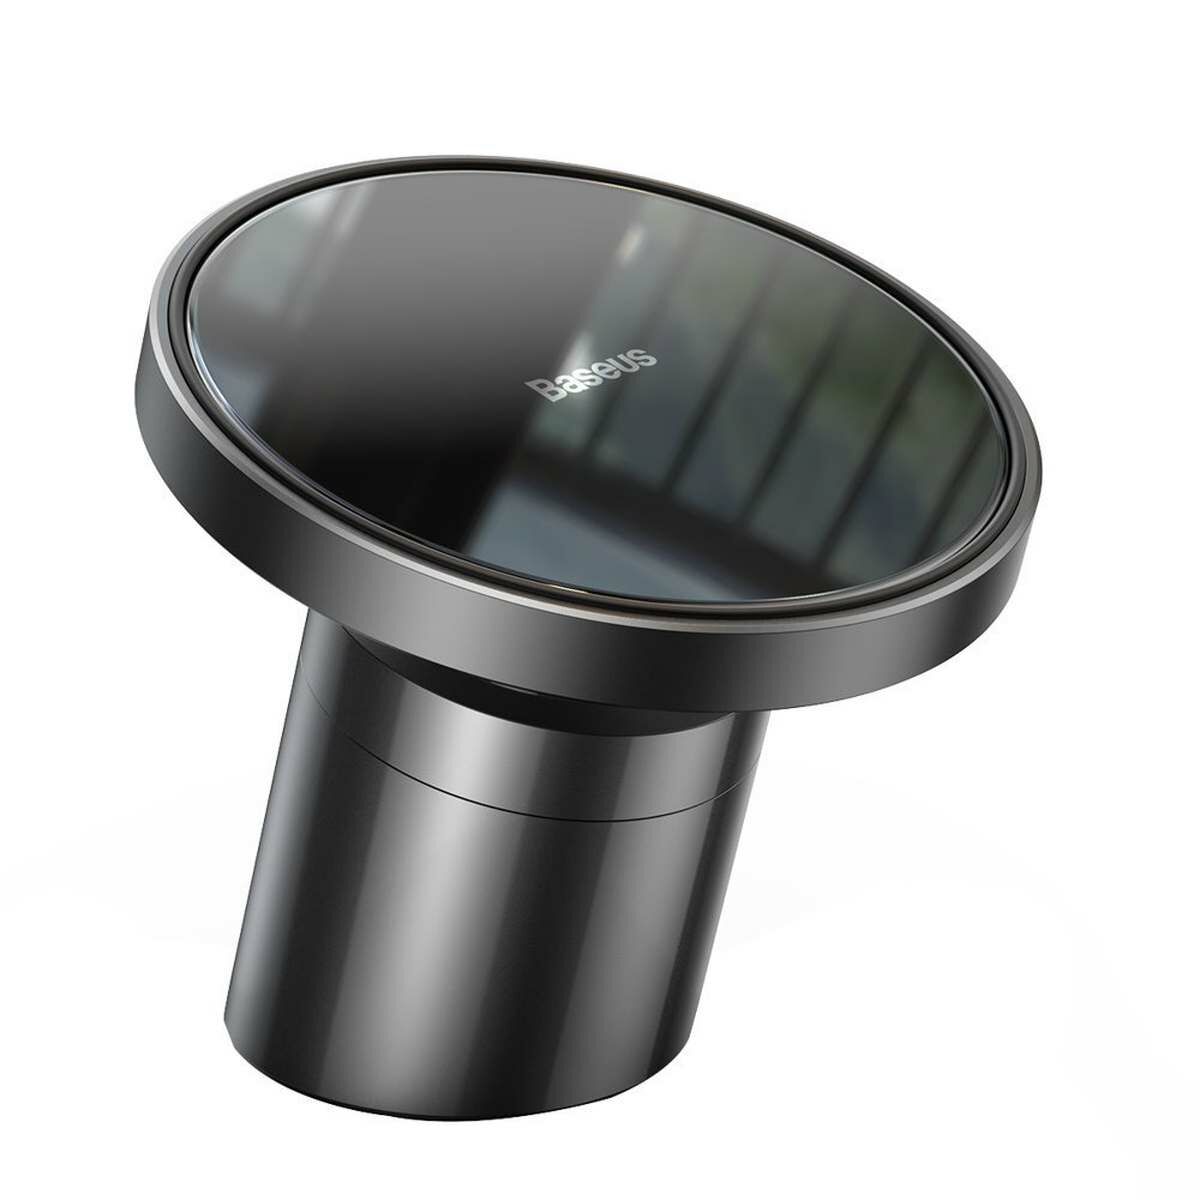 Kép 4/19 - Baseus autós telefon tartó, Magnetic, műszerfalra/szellőzőrácsra, 360 fokban forgatható, iPhone MagSafe kompatibilis, fekete (SULD-01)